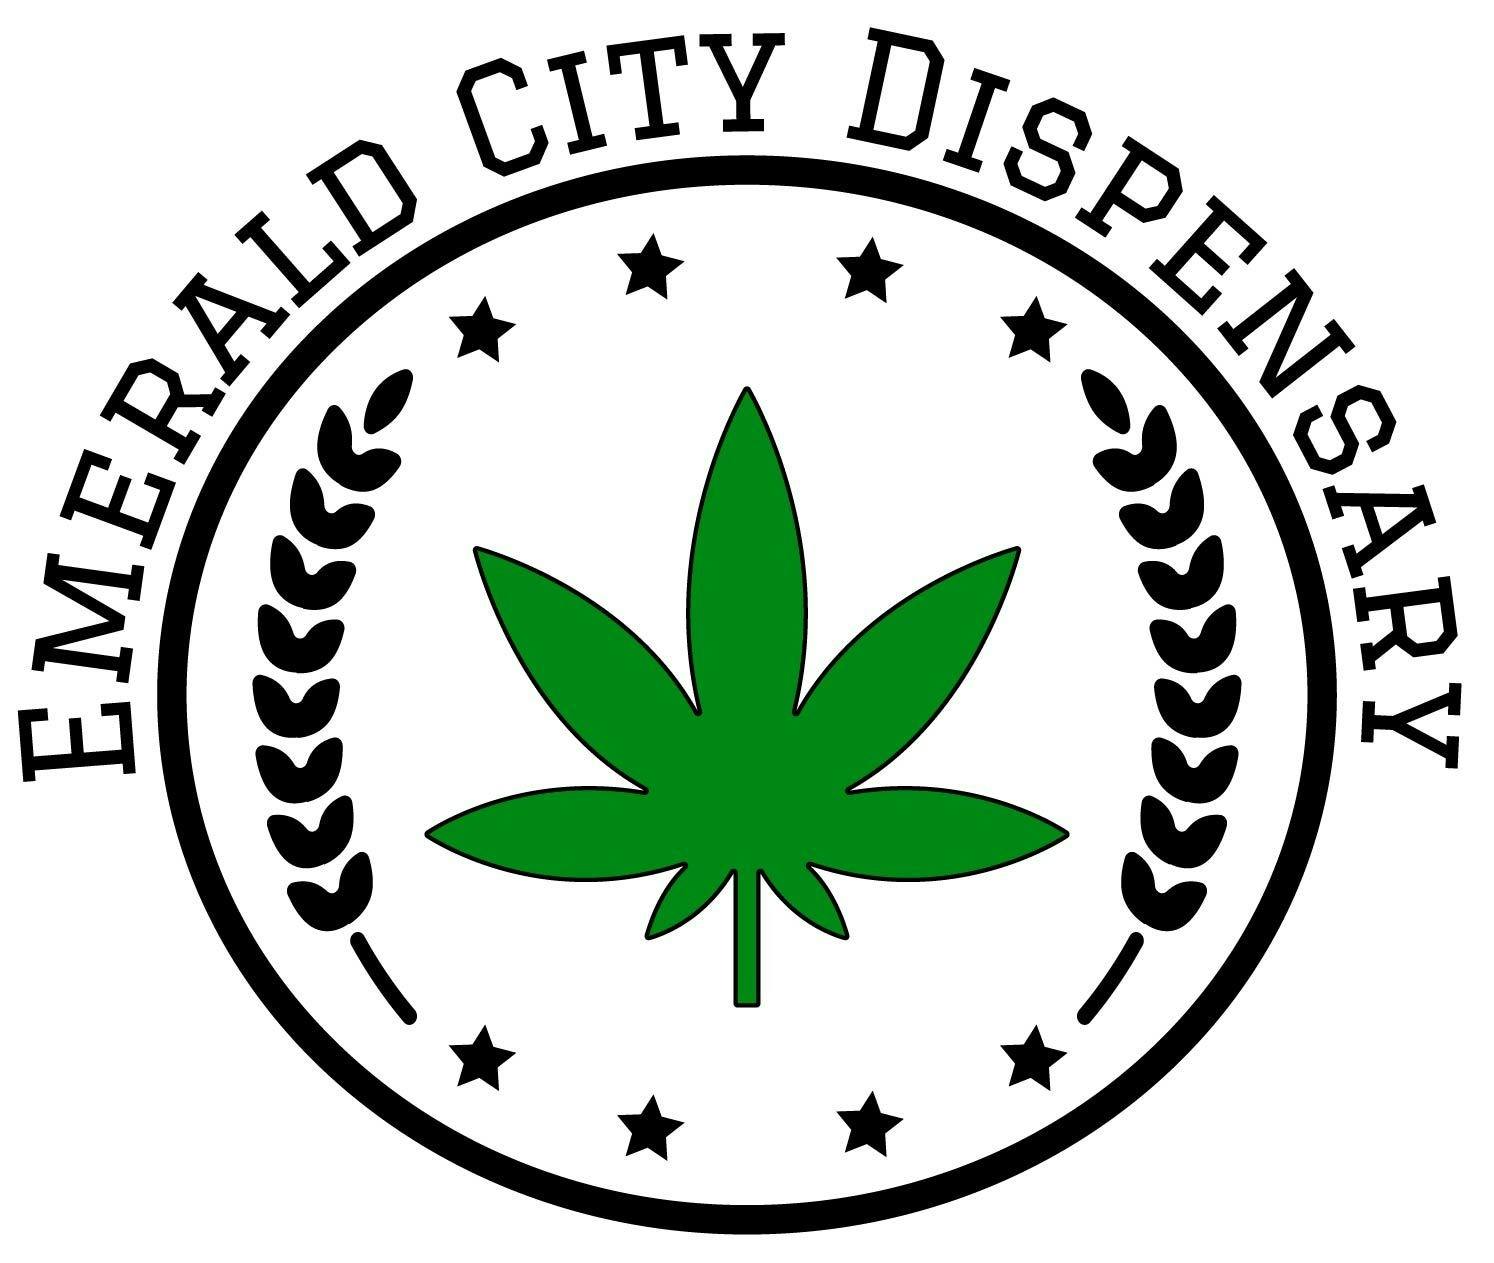 Emerald City Dispensary